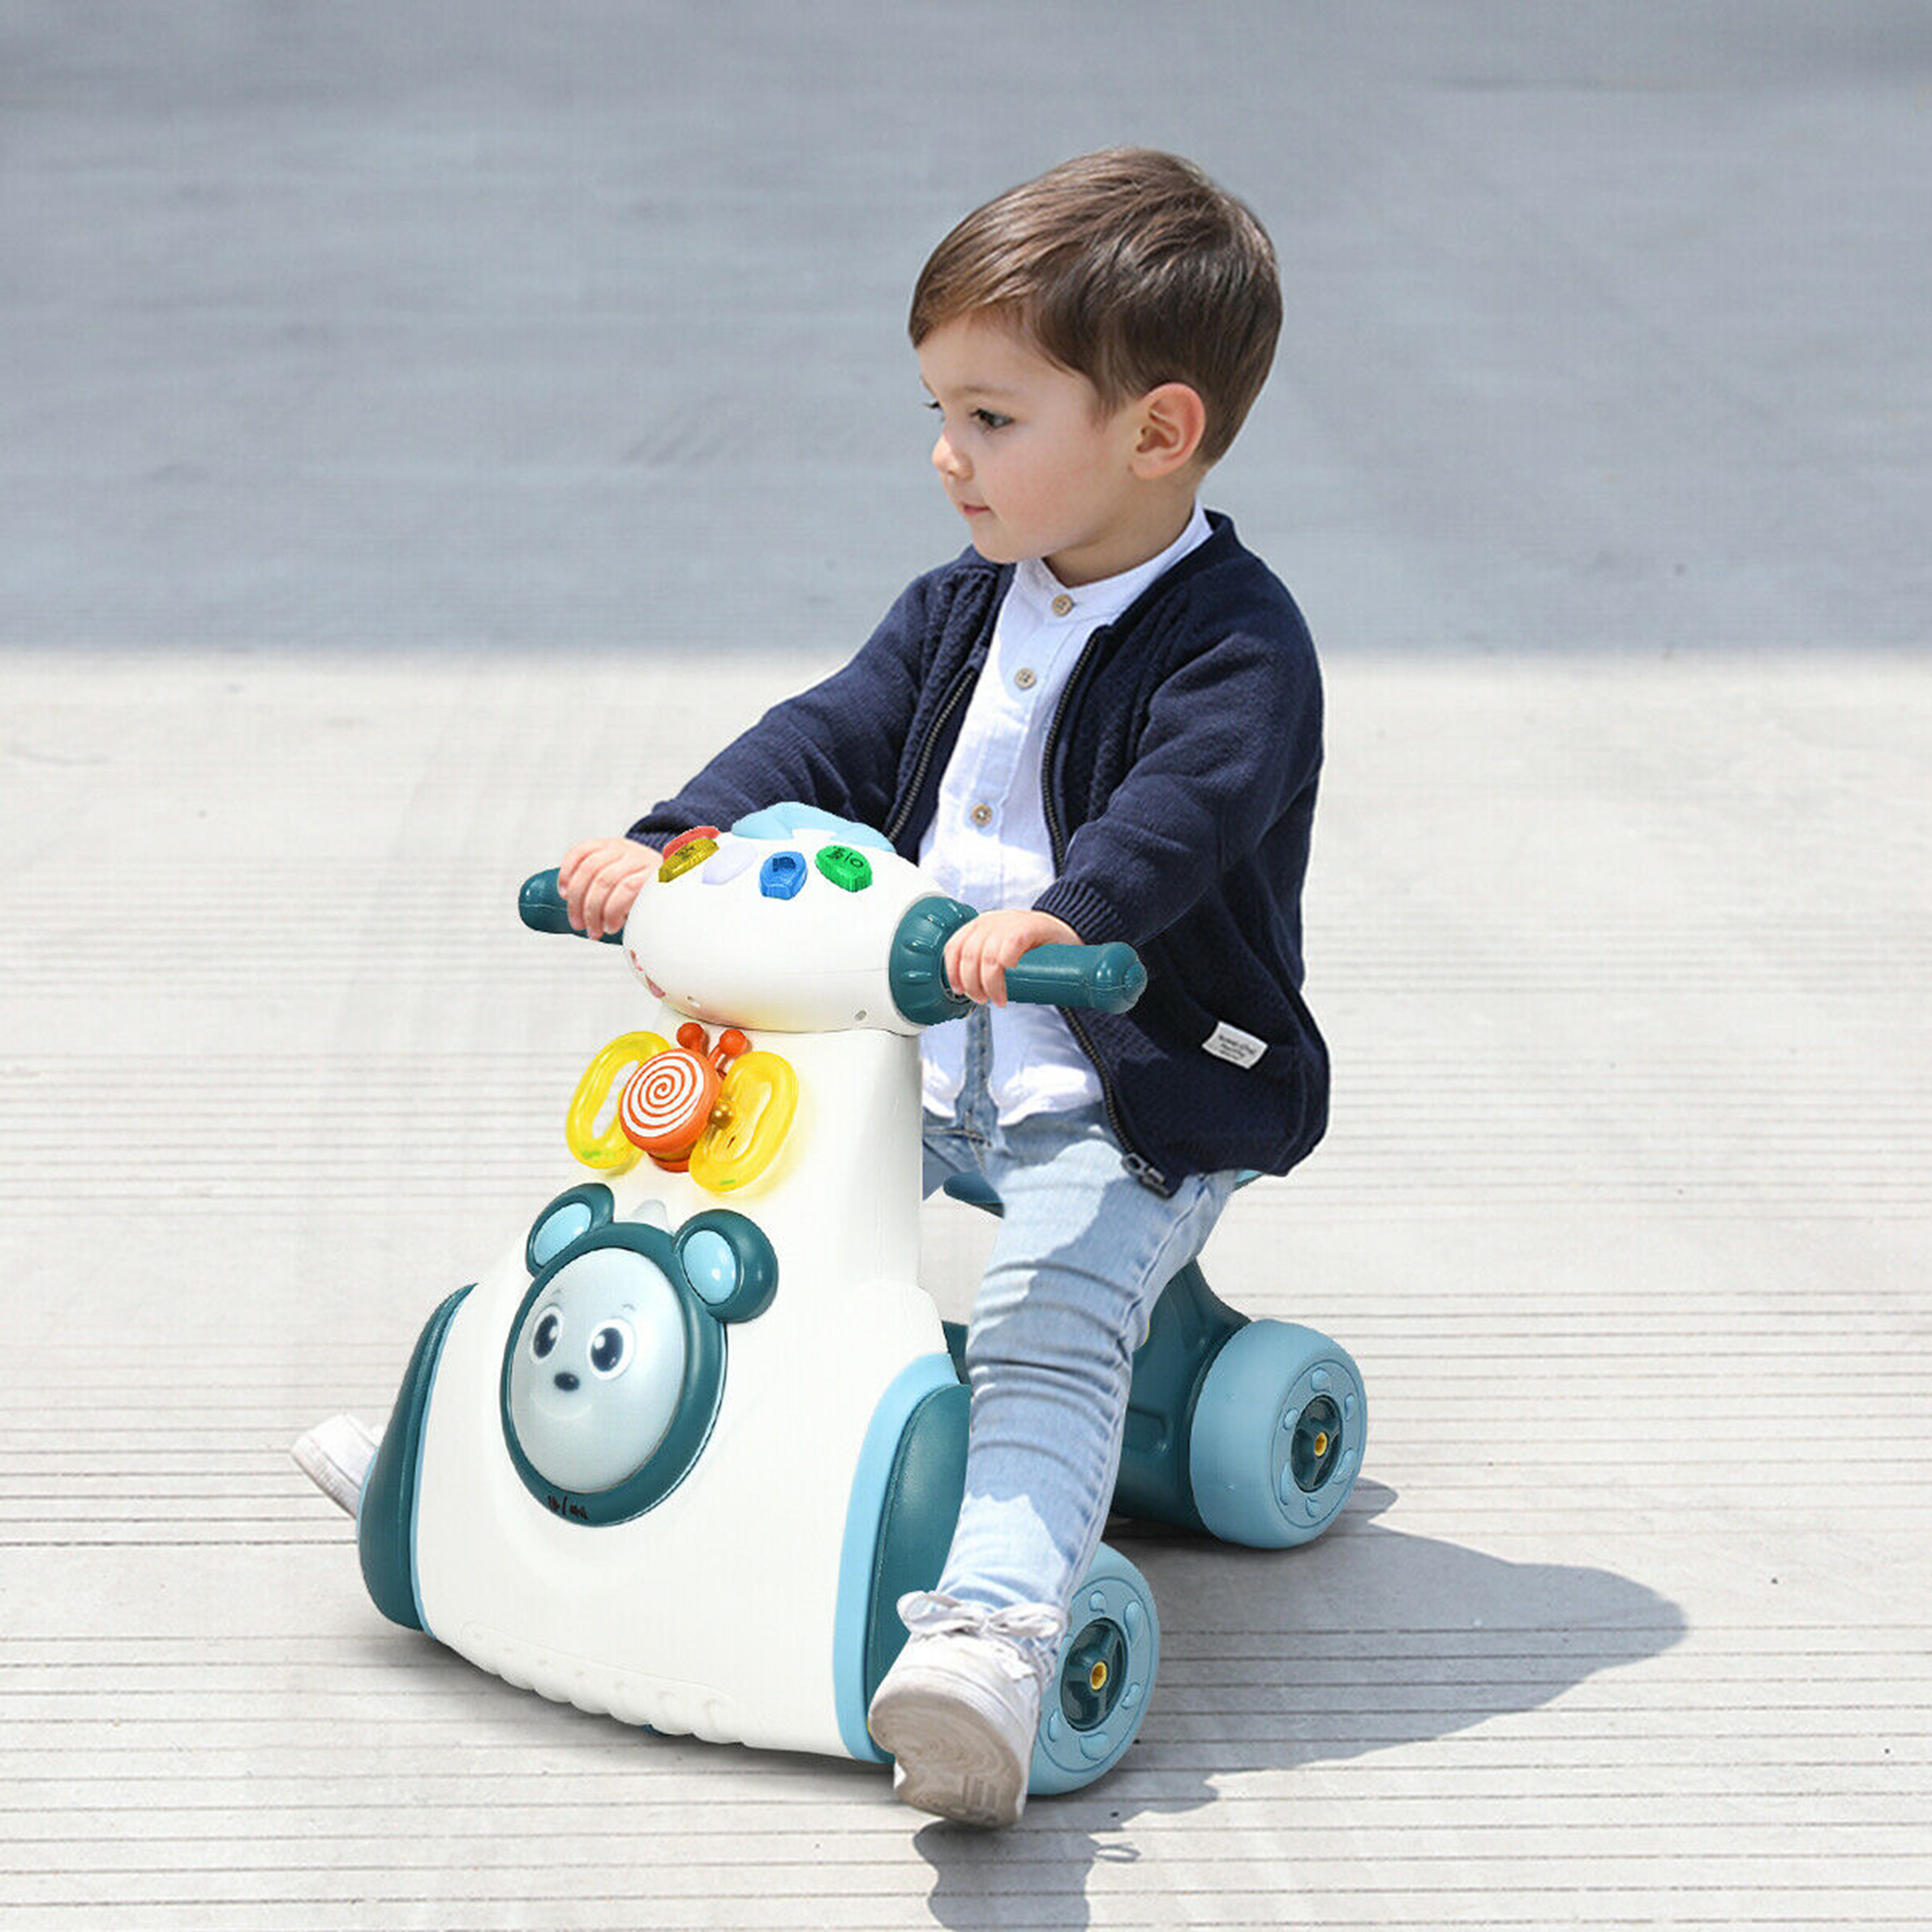 Gymax Baby Balance Bike Musical Ride Toy w/ Light & Sensing Function Toddler Walker - image 4 of 10